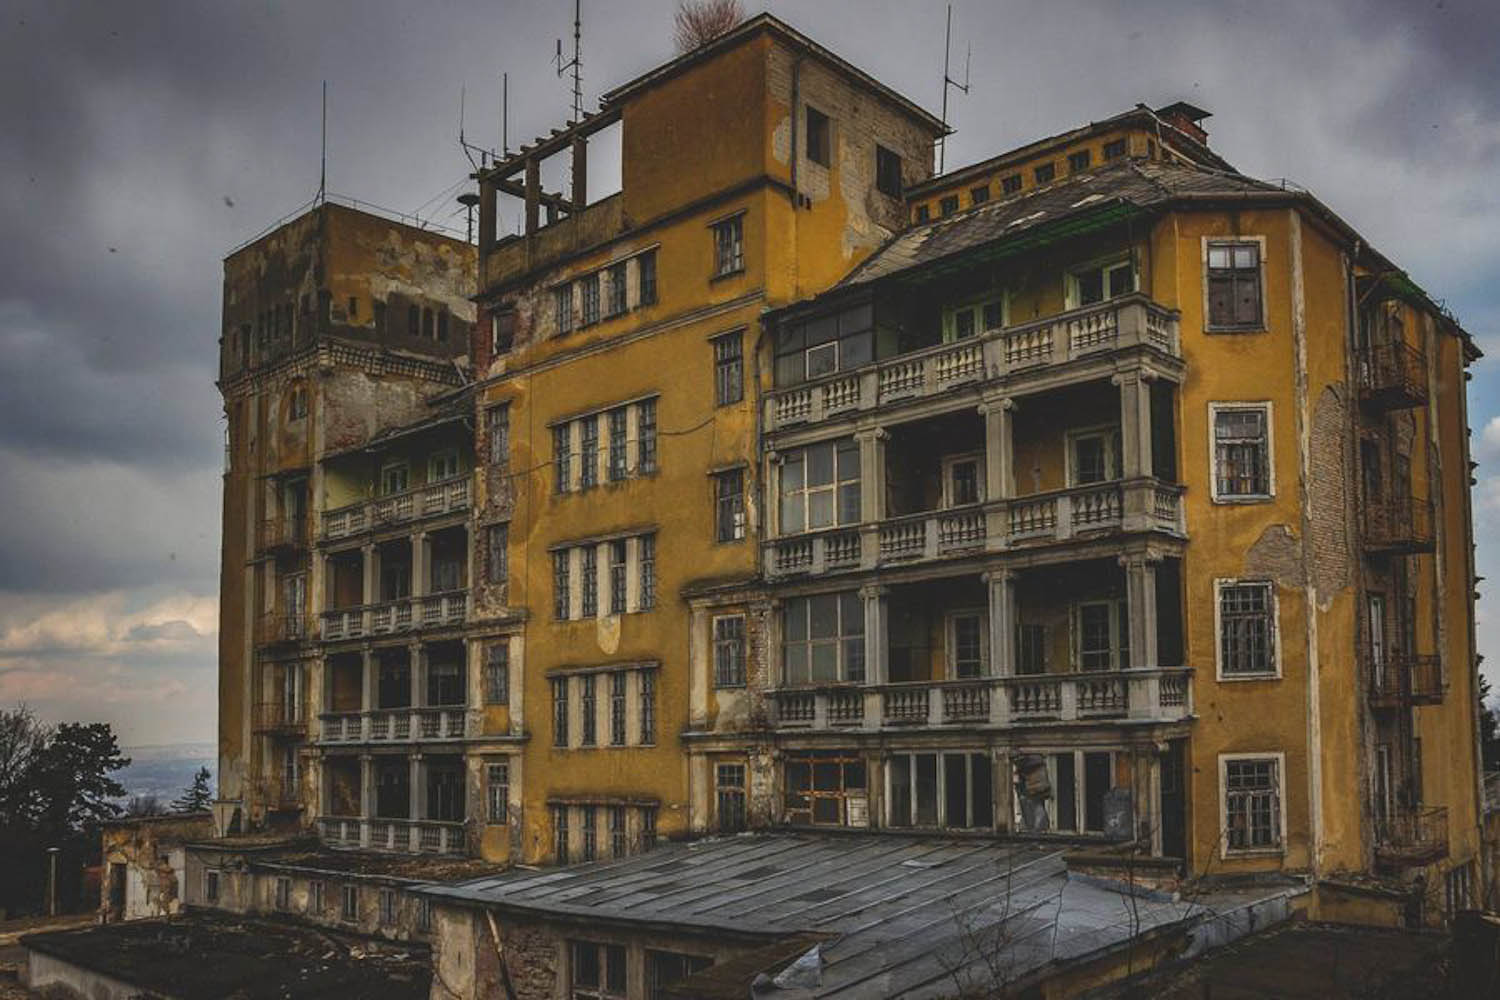 Kórház a város fölött: az egykori Svábhegyi Szanatórium